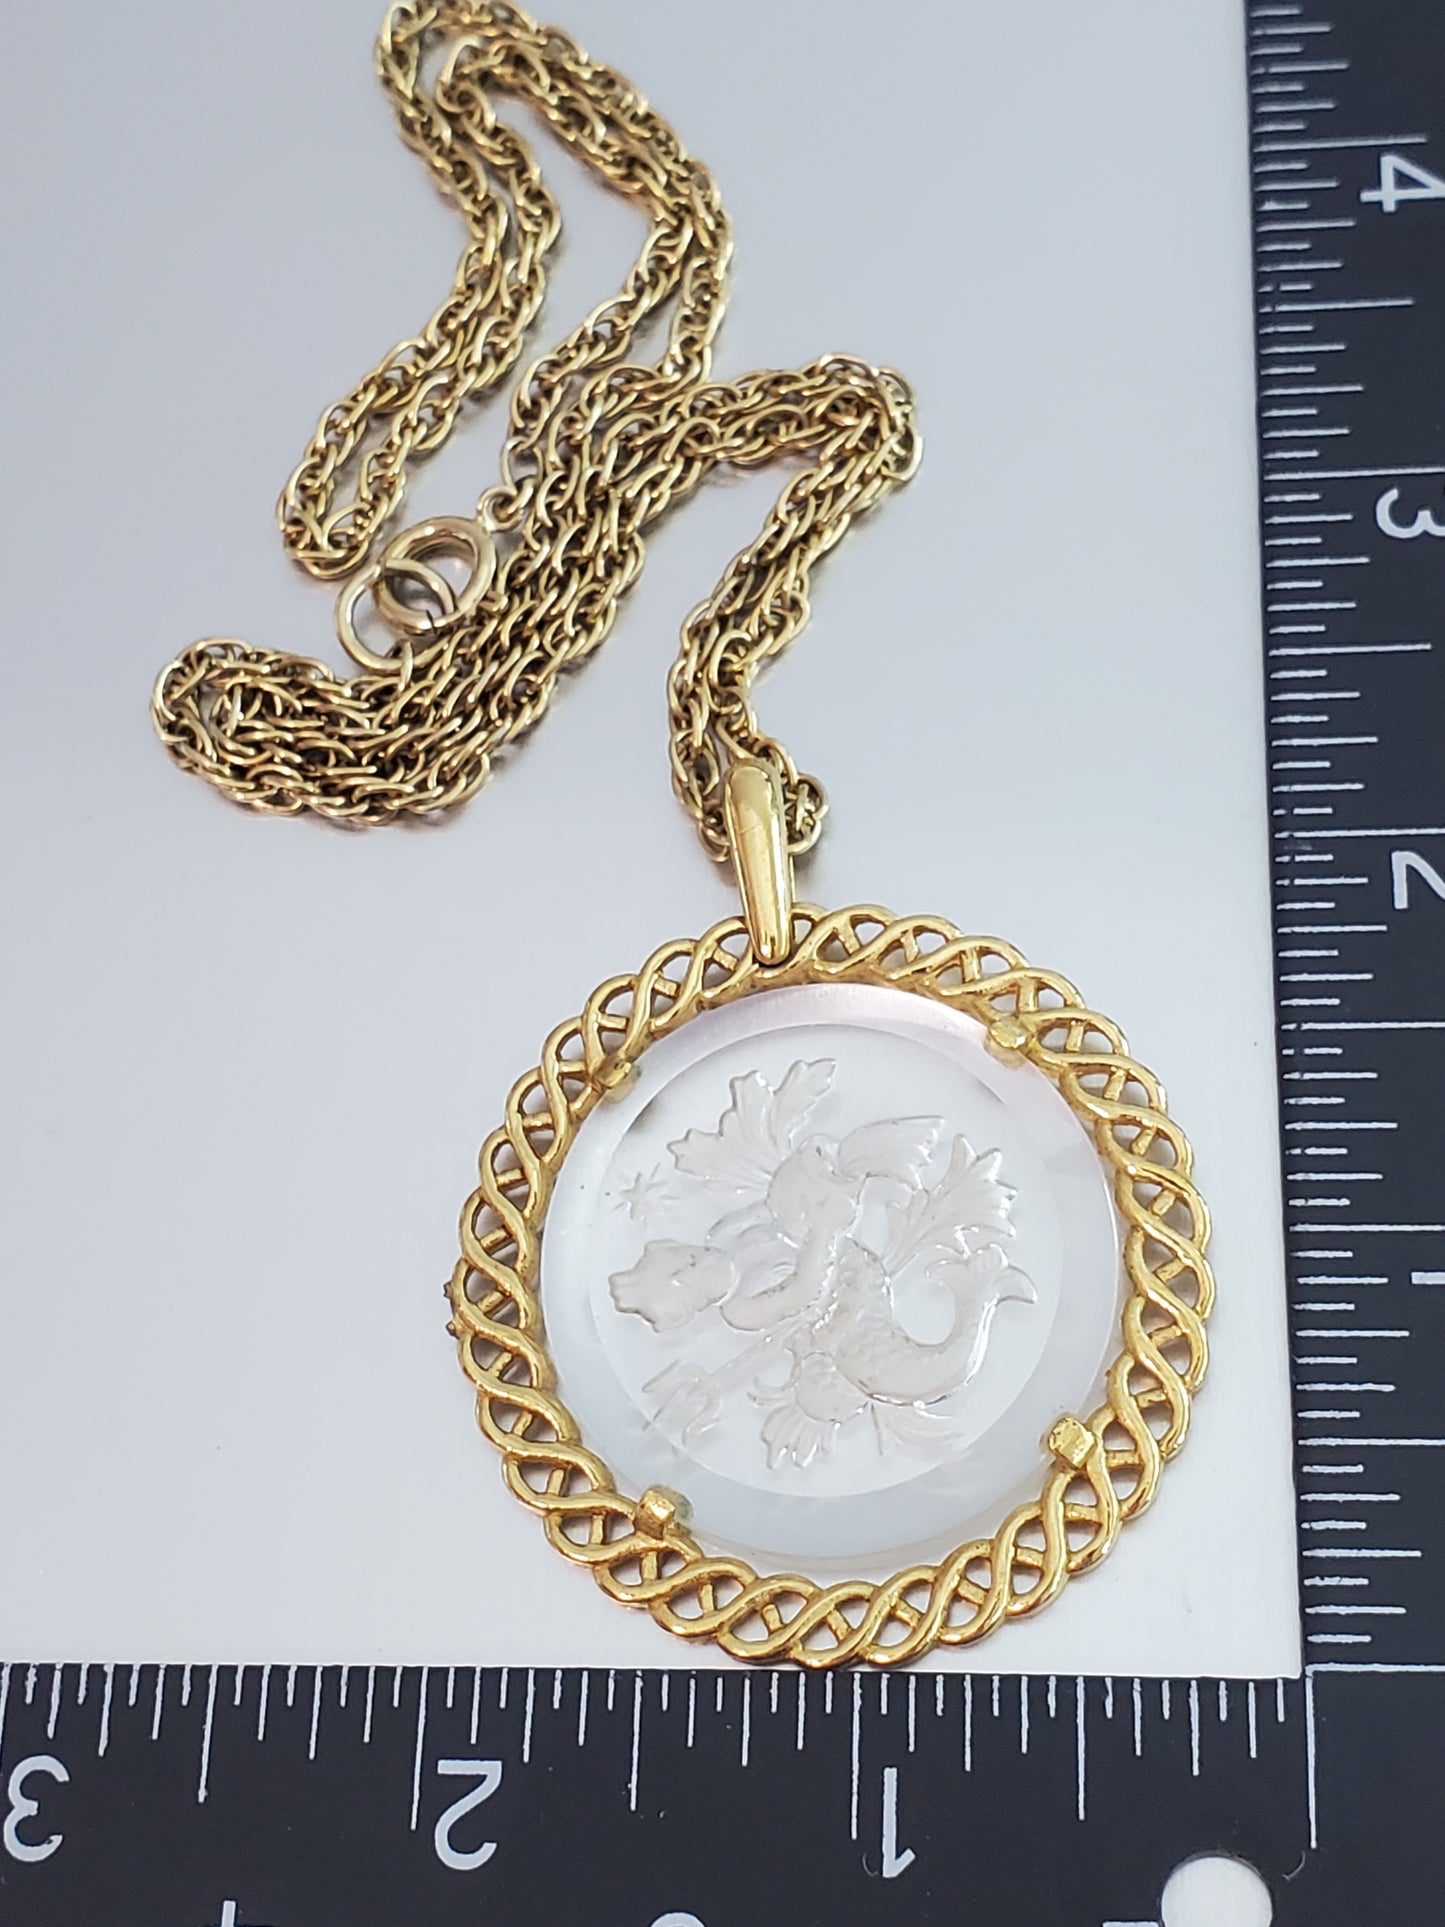 5866-Crown Trifari Aquarius Glass Necklace